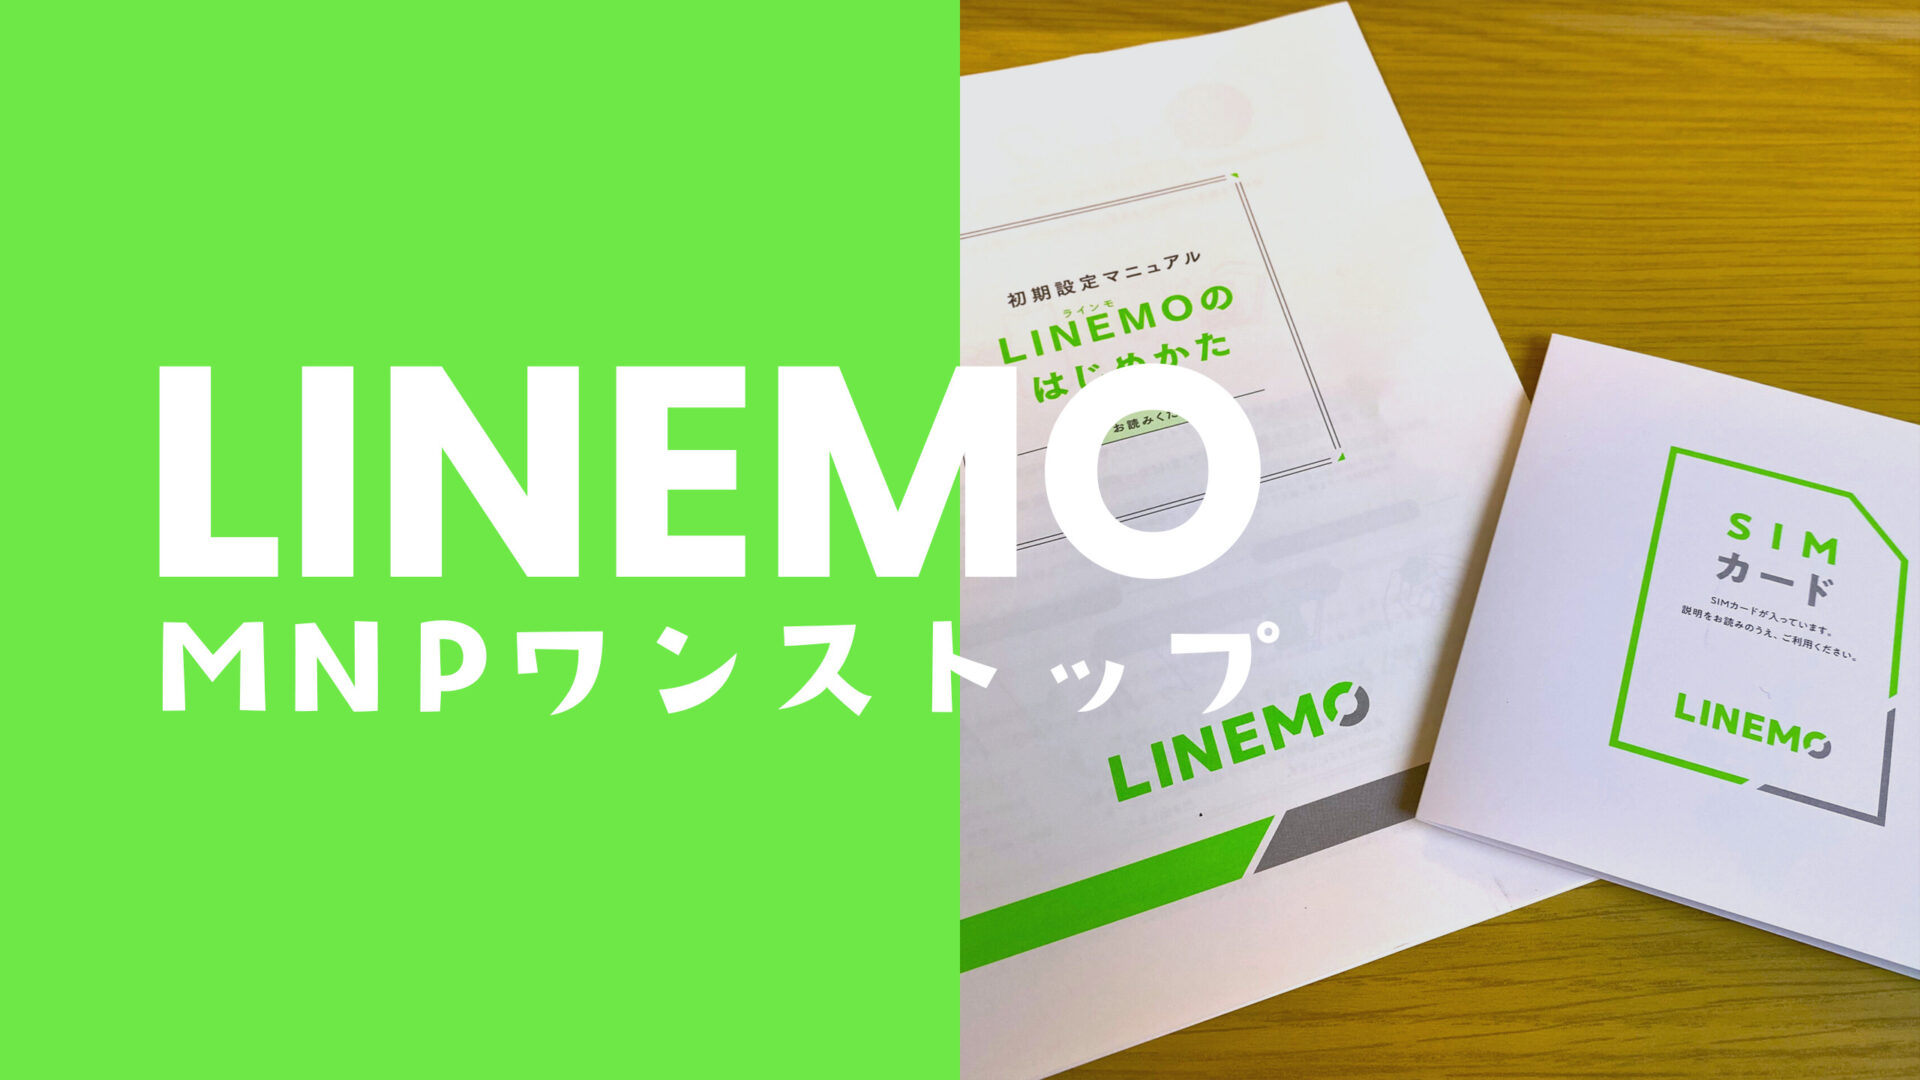 LINEMO(ラインモ)へワンストップMNP乗り換えのやり方を画像ありで解説。のサムネイル画像